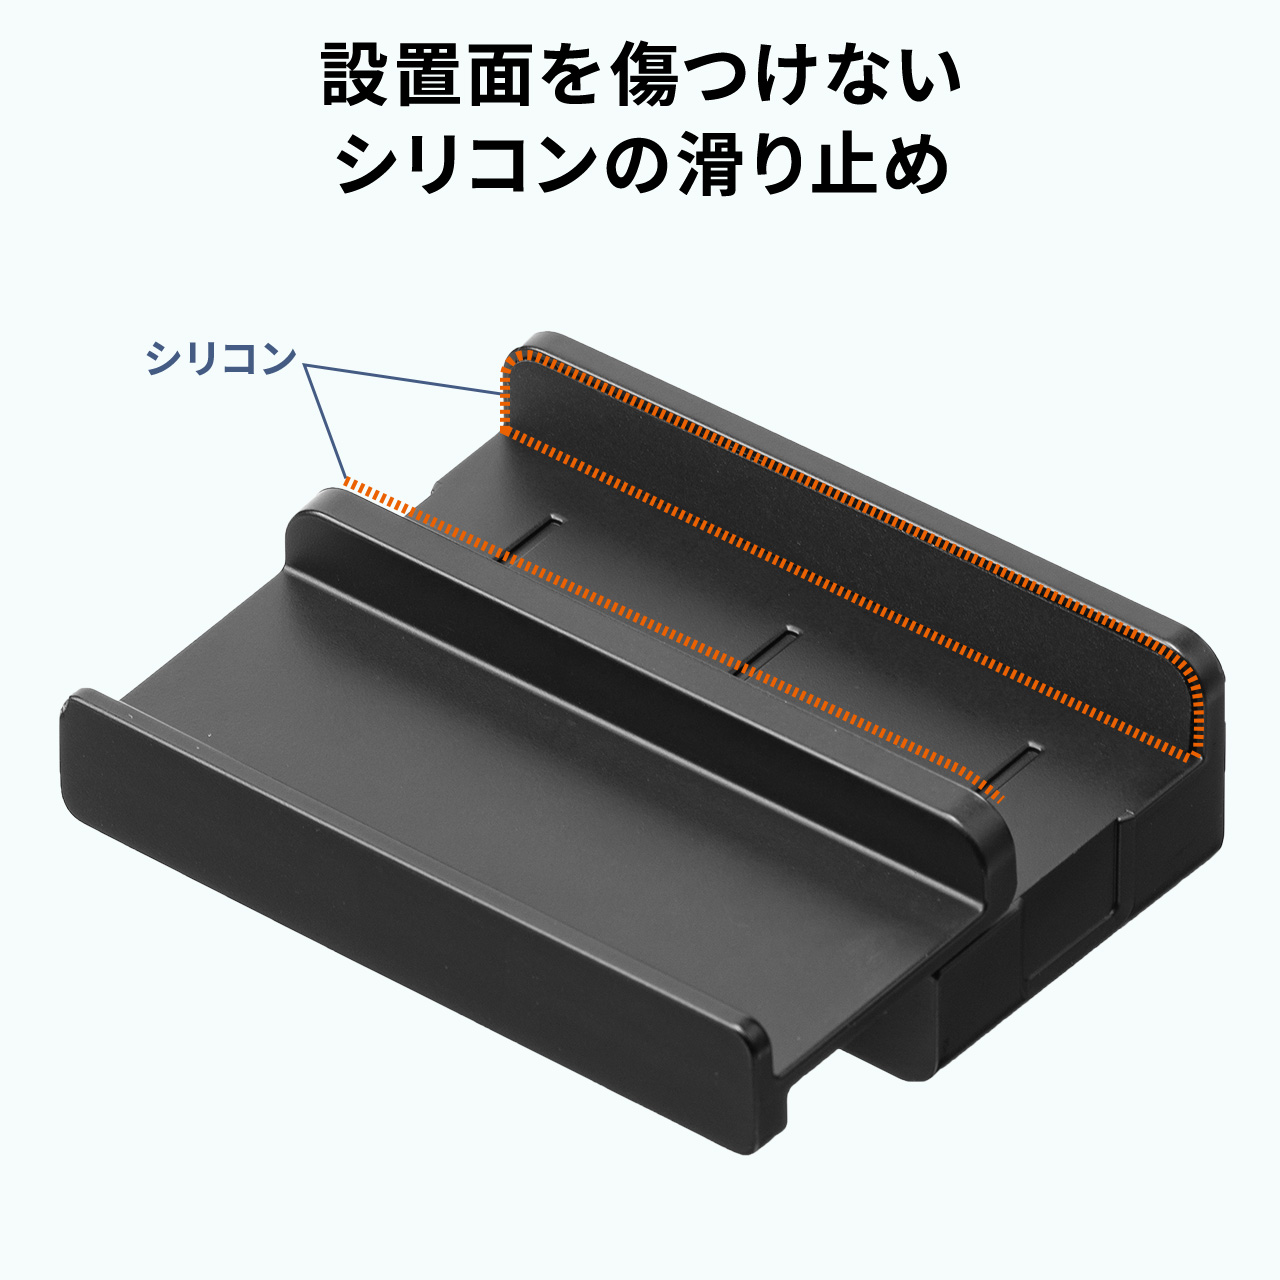 USBハブ クランプ固定 机固定 1.5mケーブル Type-C対応 4ポート 400